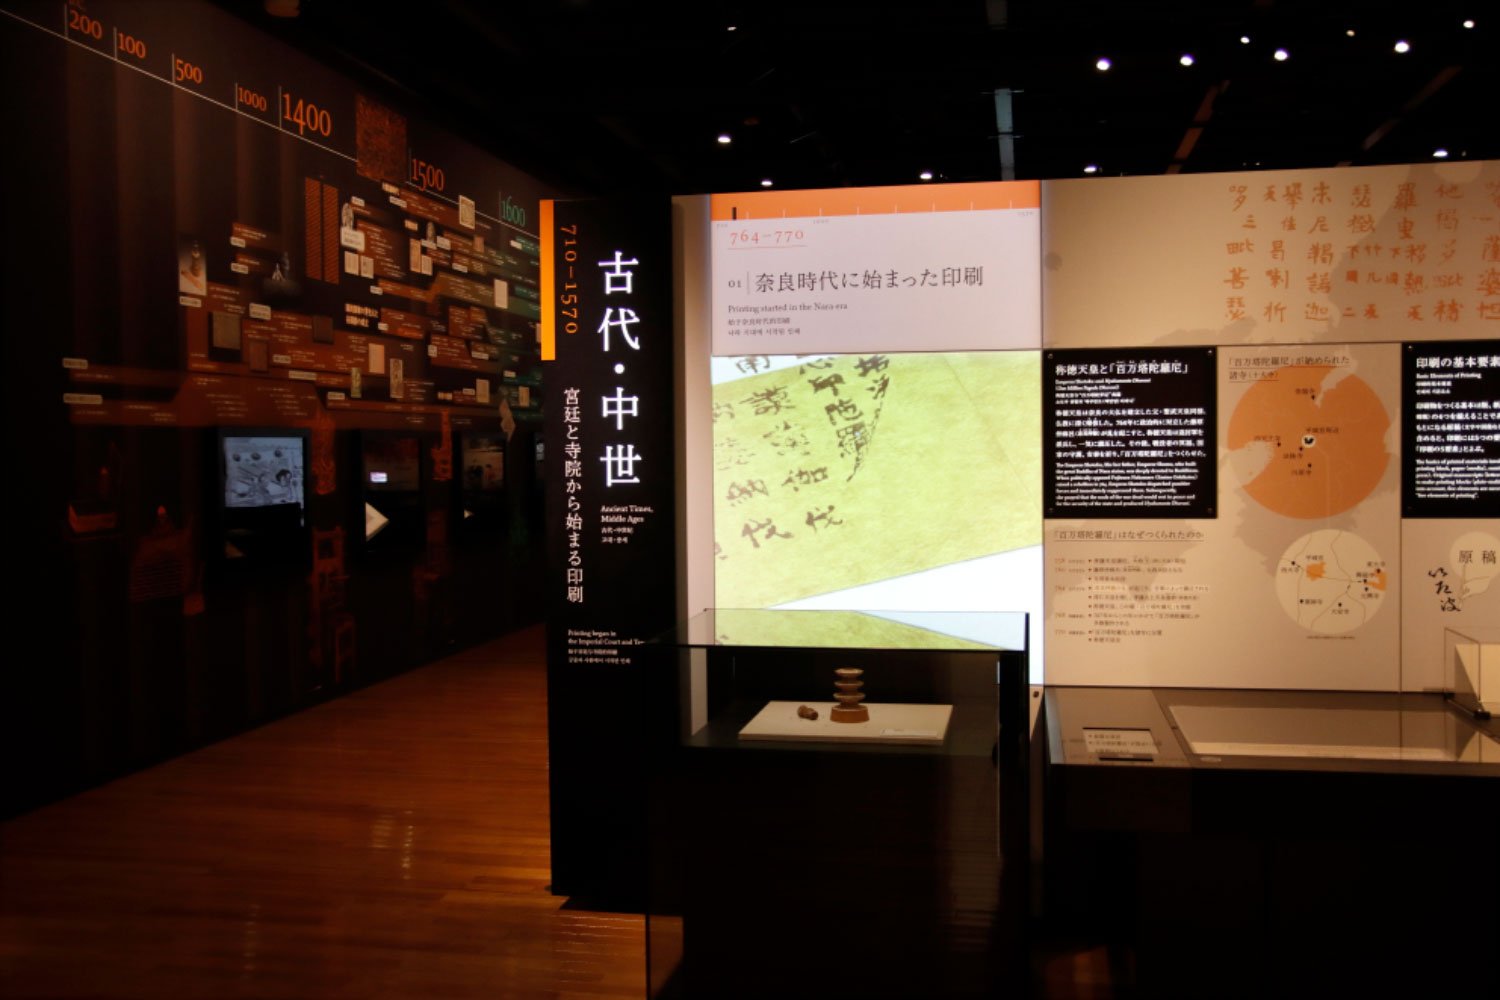 奈良時代から始まる日本の印刷史。展示は4つの大きな時代区分を設けて展開する。